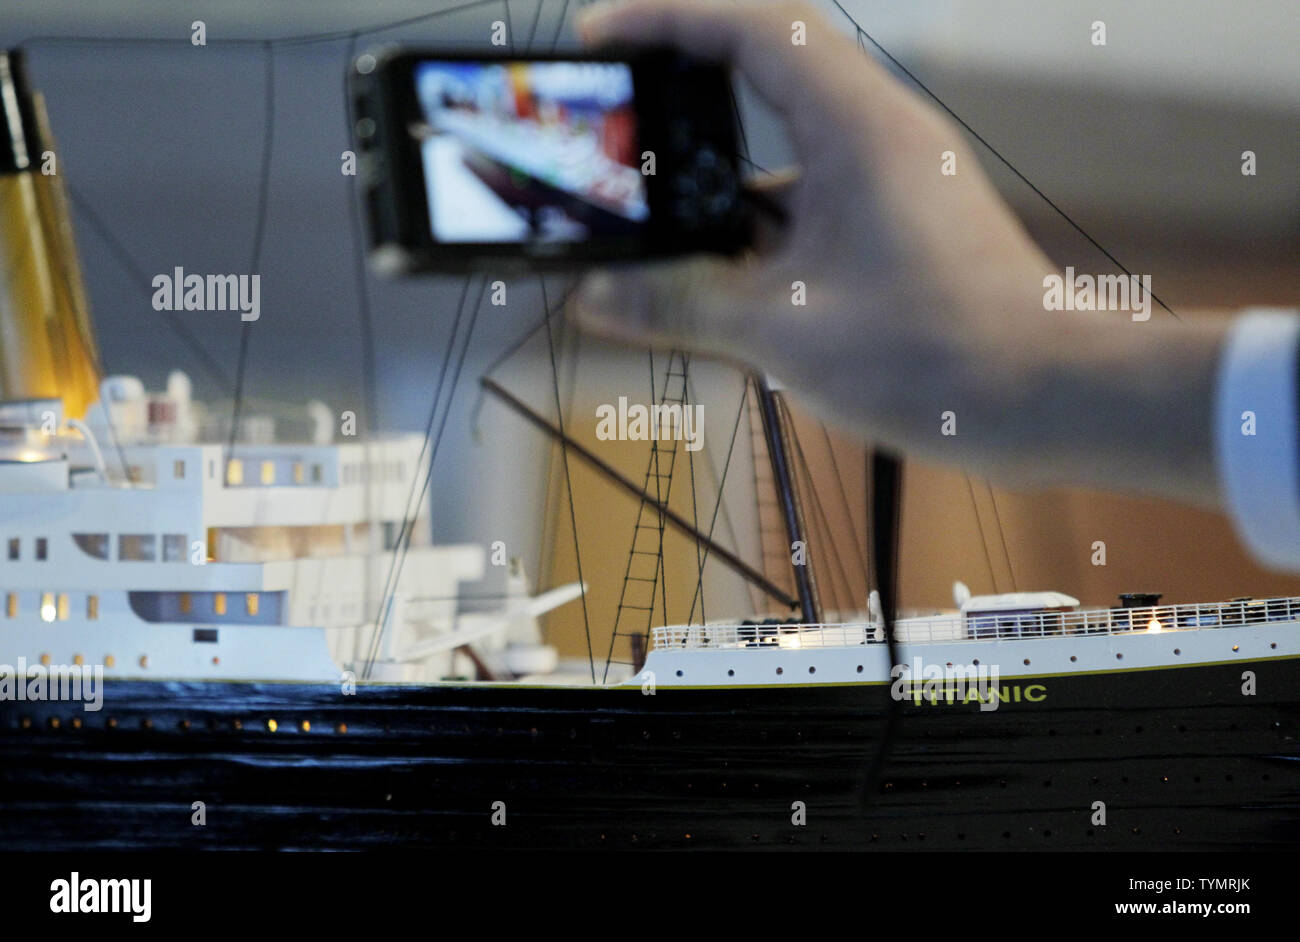 deficiencia Larry Belmont mueble Titanic model fotografías e imágenes de alta resolución - Página 4 - Alamy